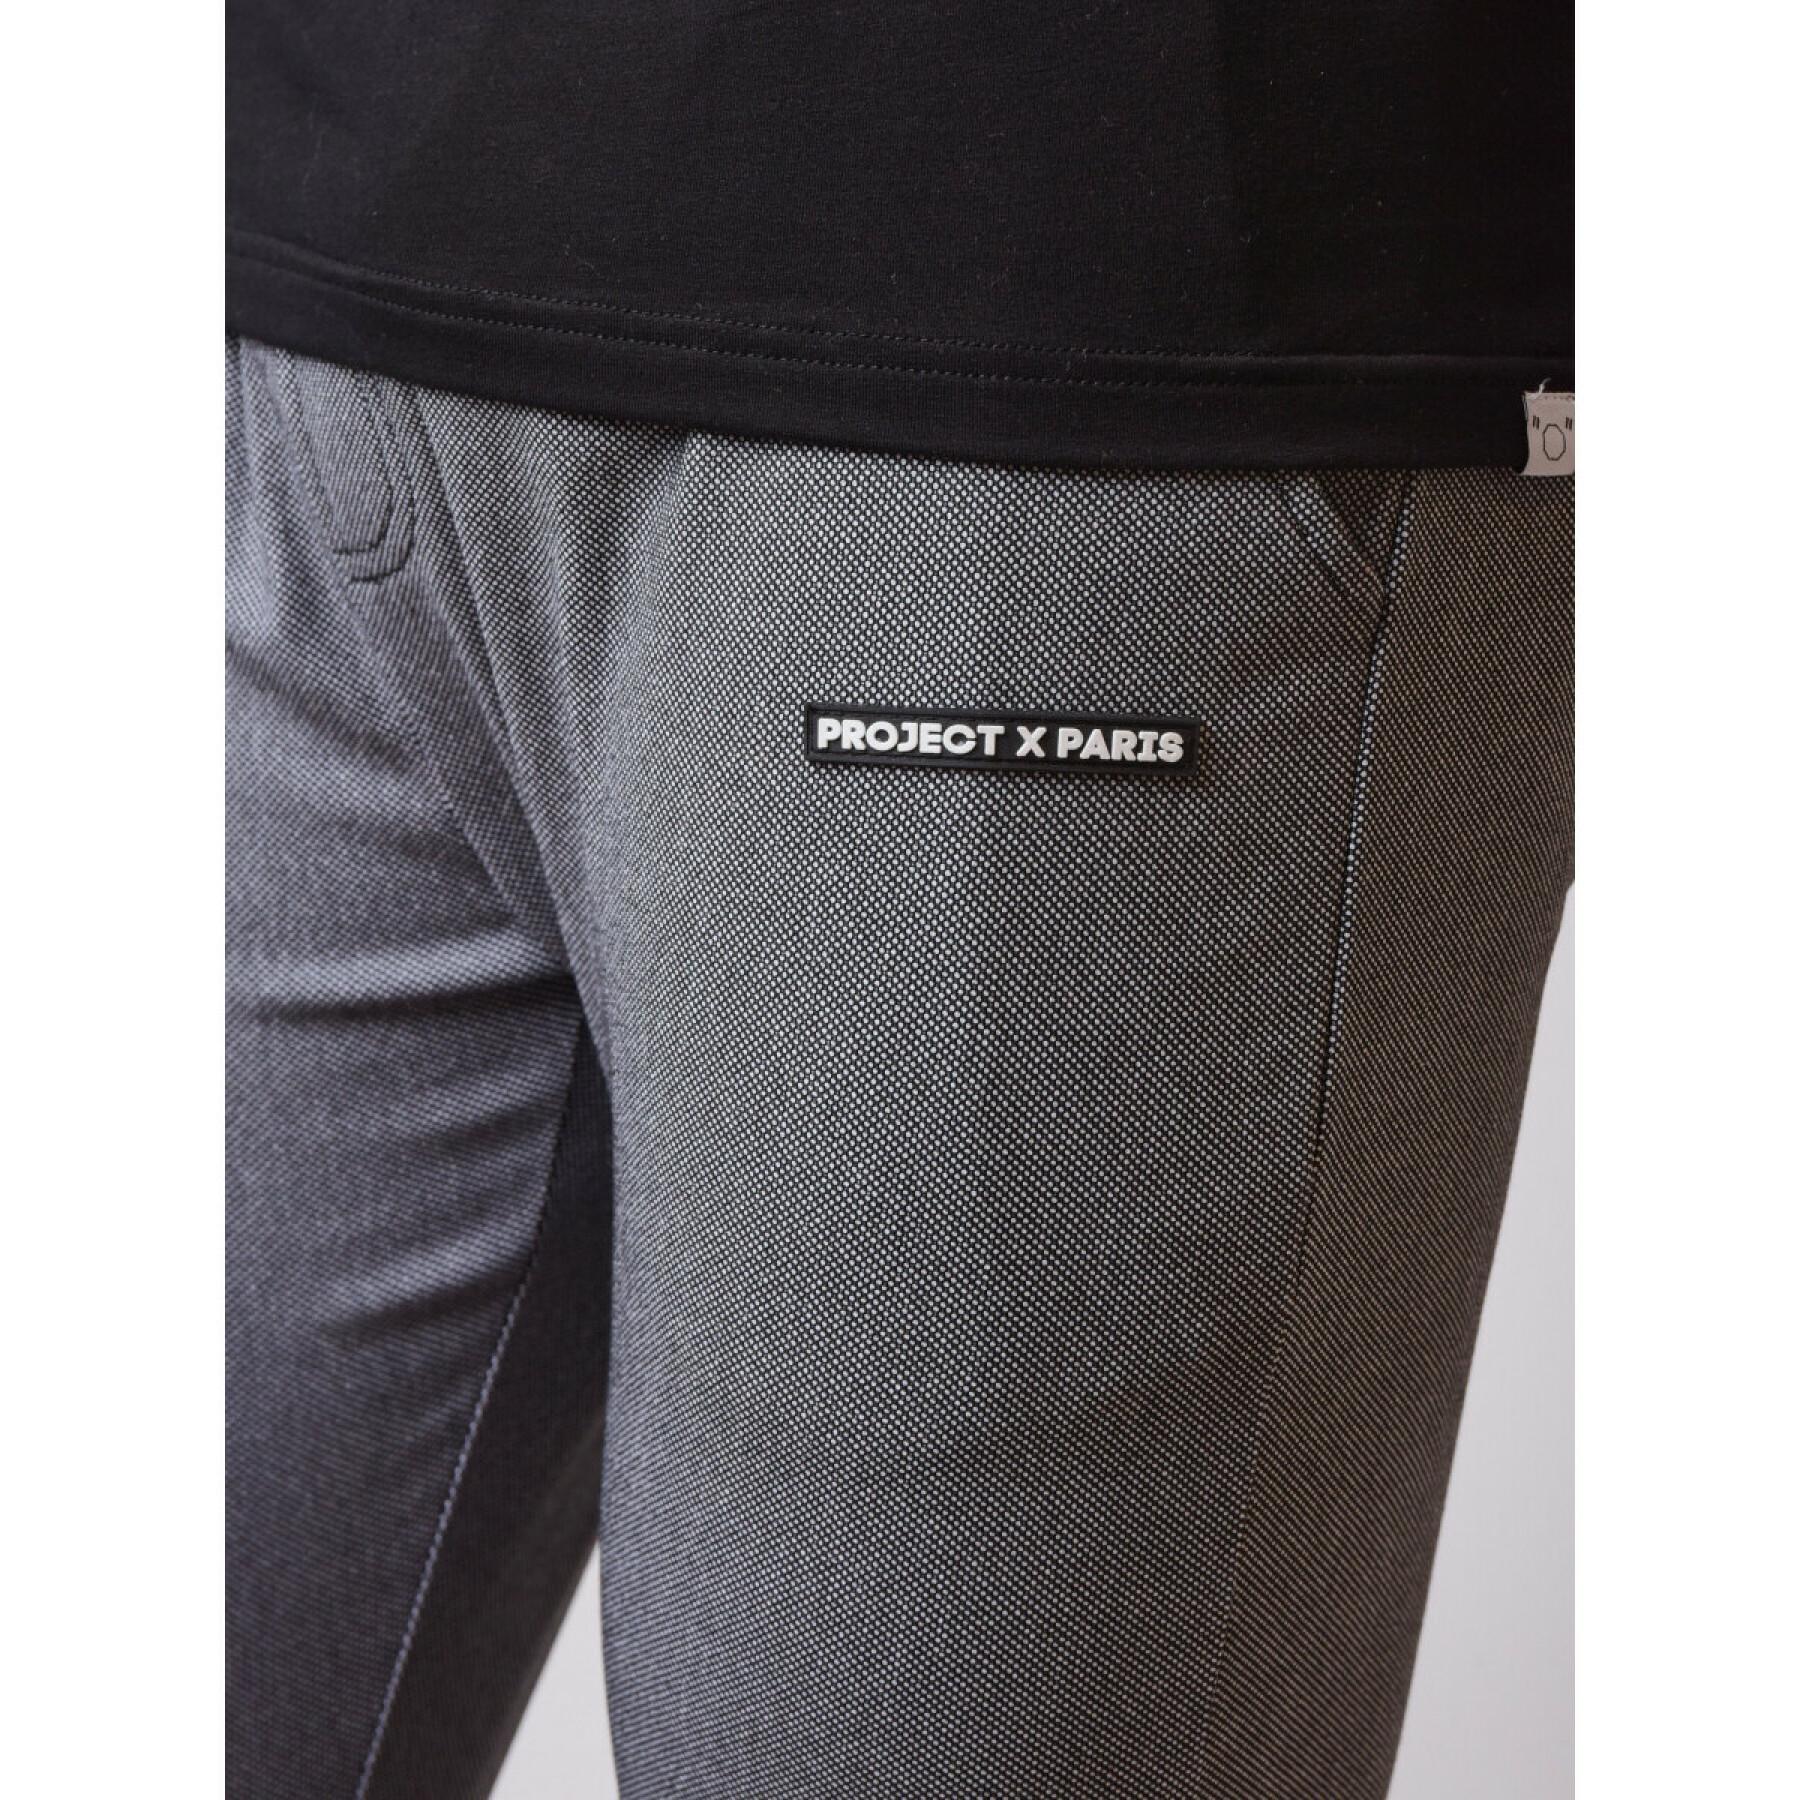 Pantaloni slim-fit testurizzati Project X Paris